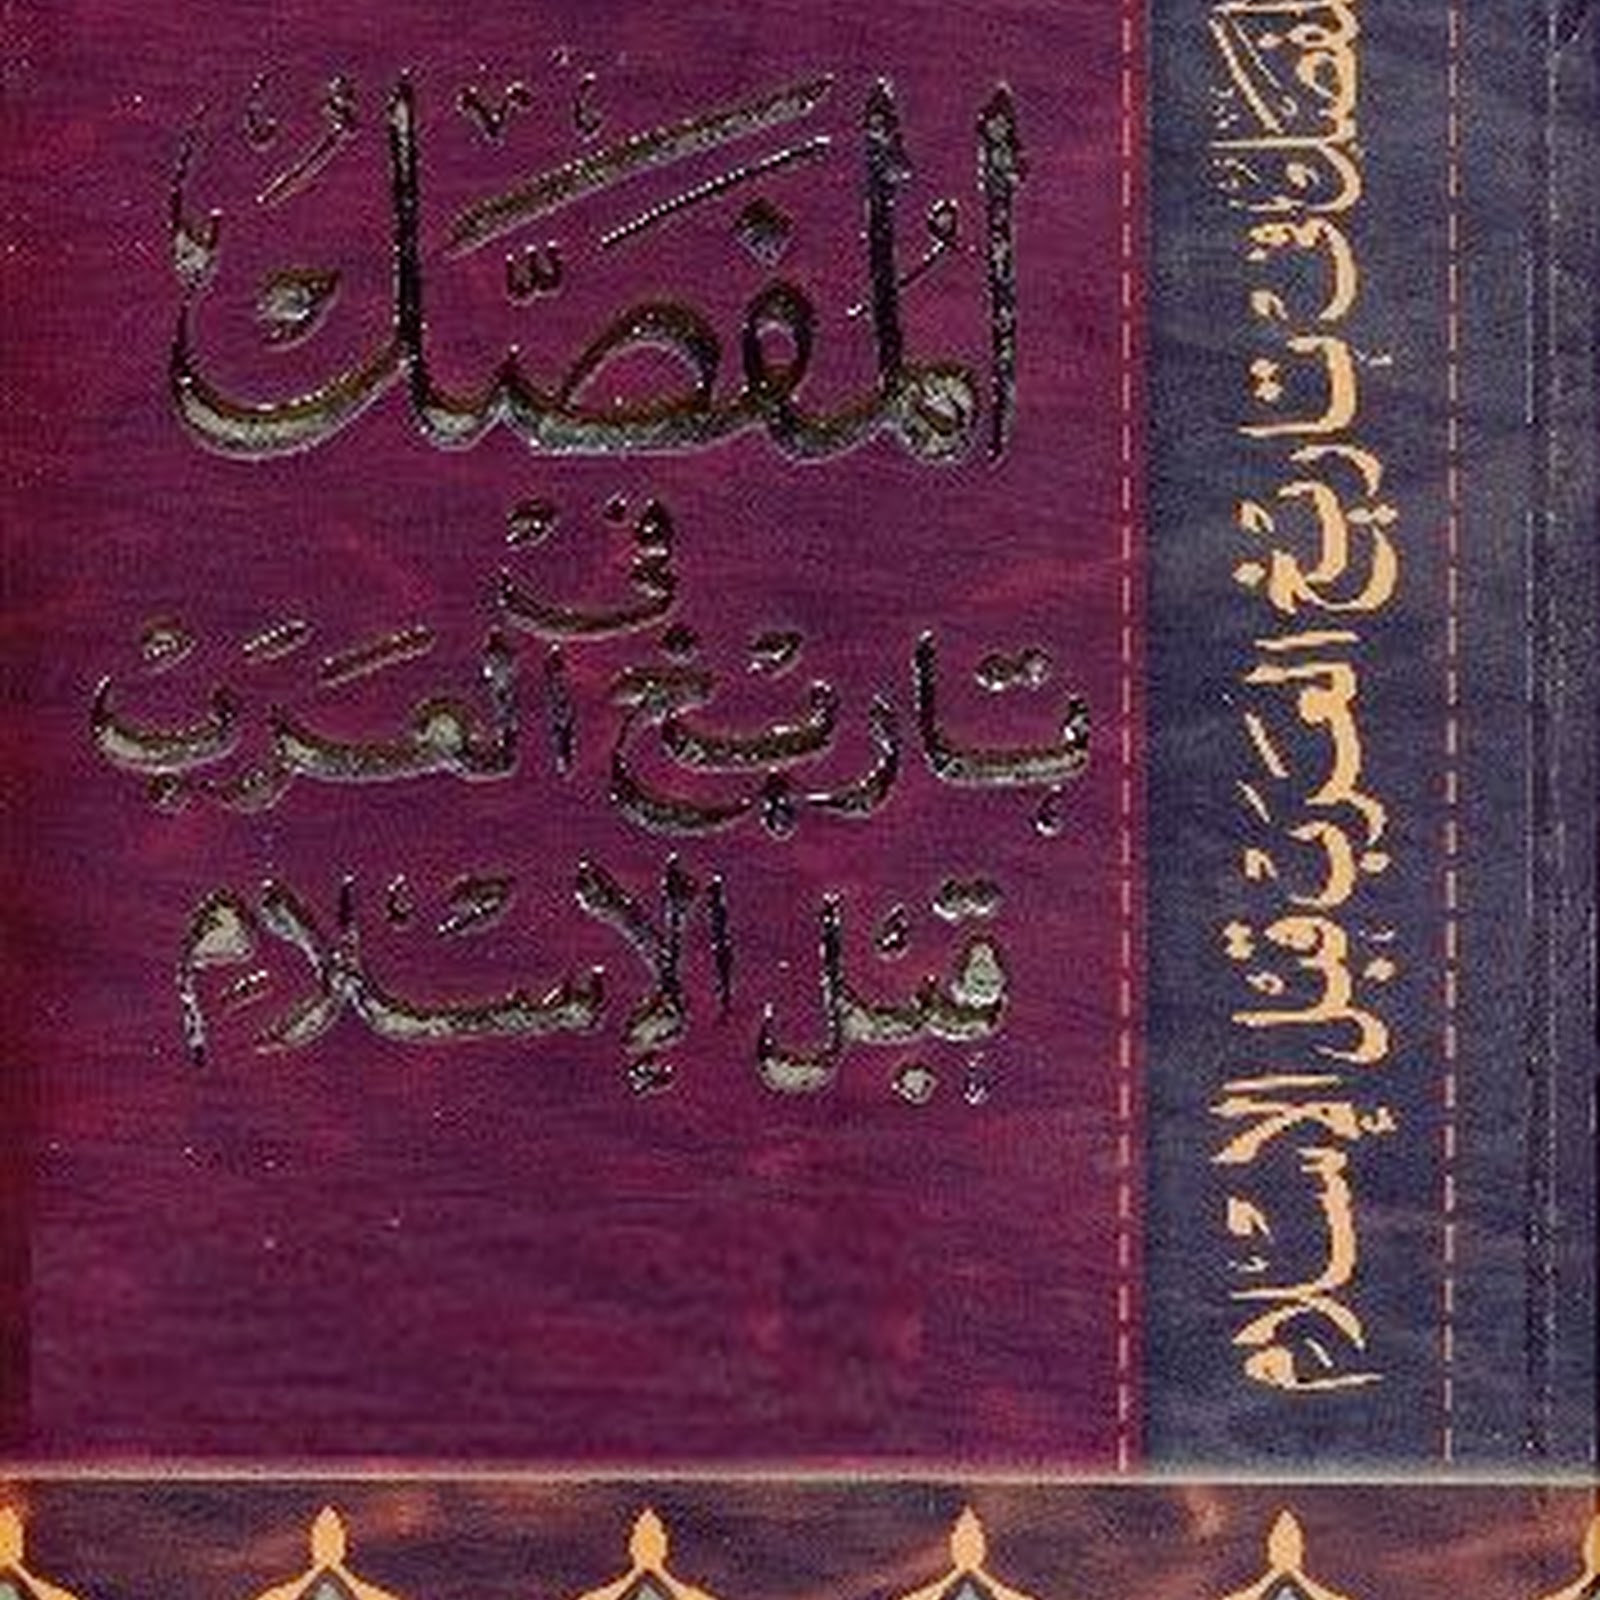 المفصل في تاريخ العرب قبل الاسلام للدكتور جواد علي Pdf مكتبة سور الازبكية